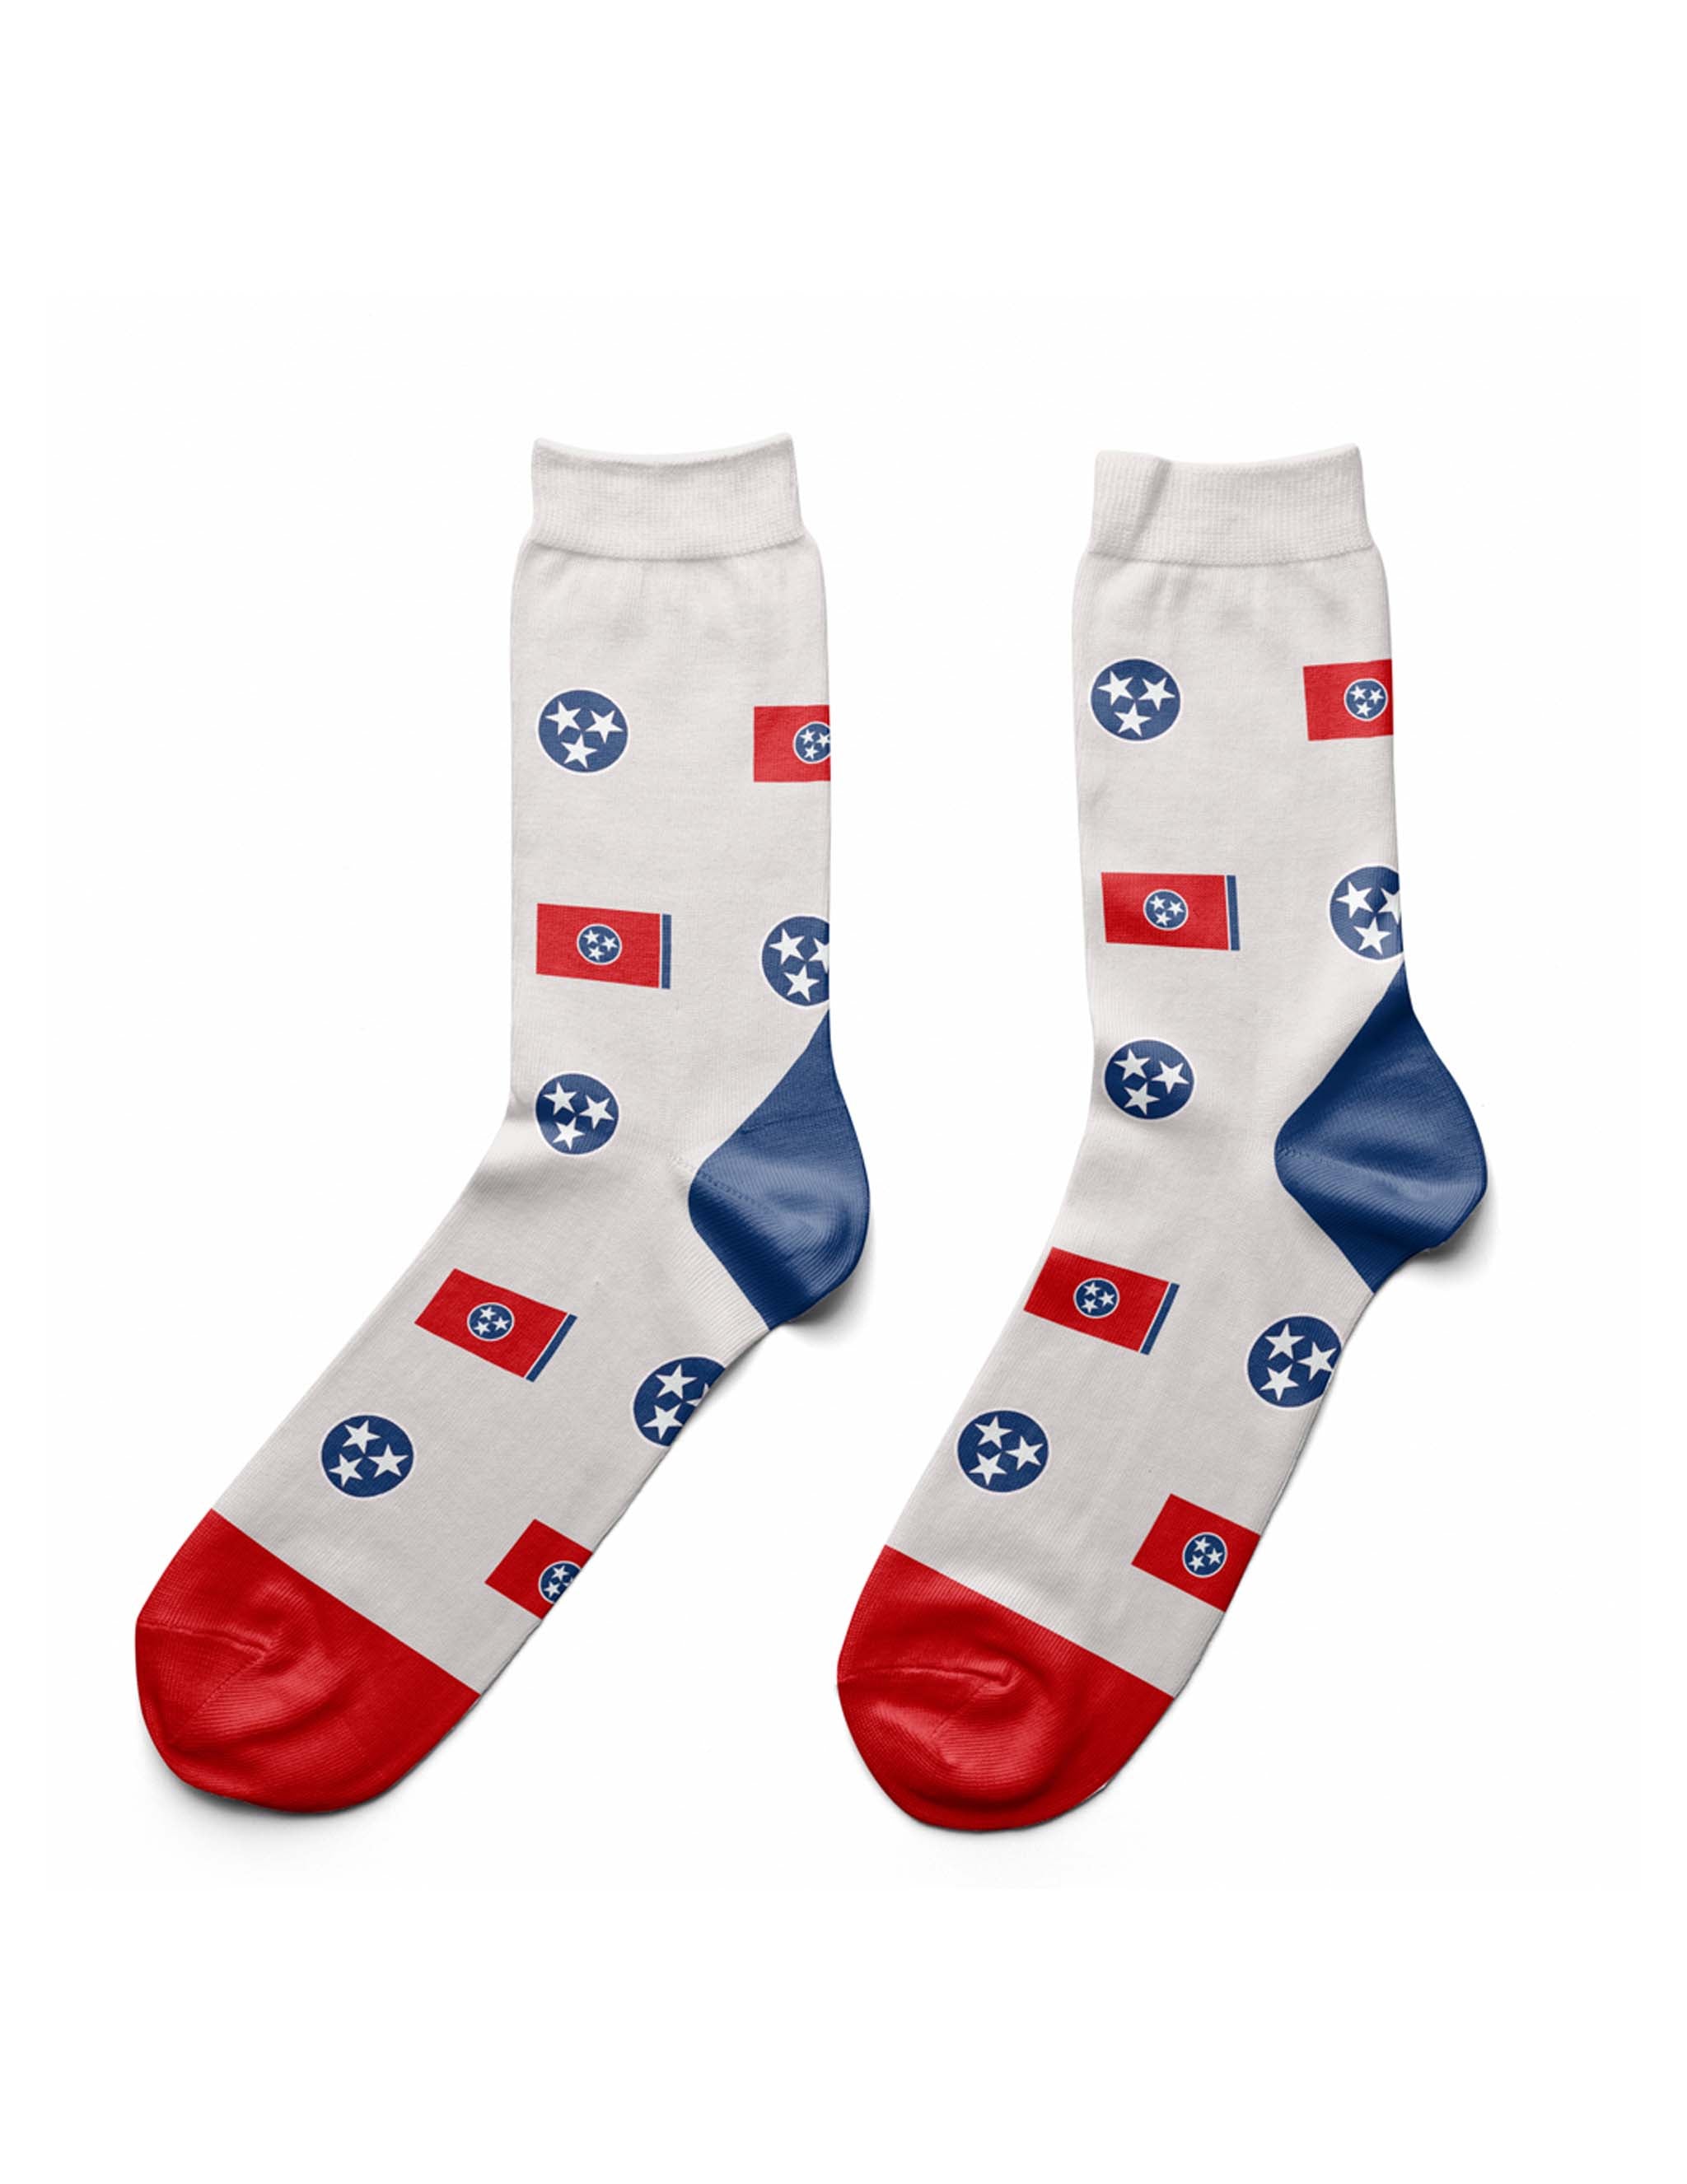 Tennessee Tri-Star Socks